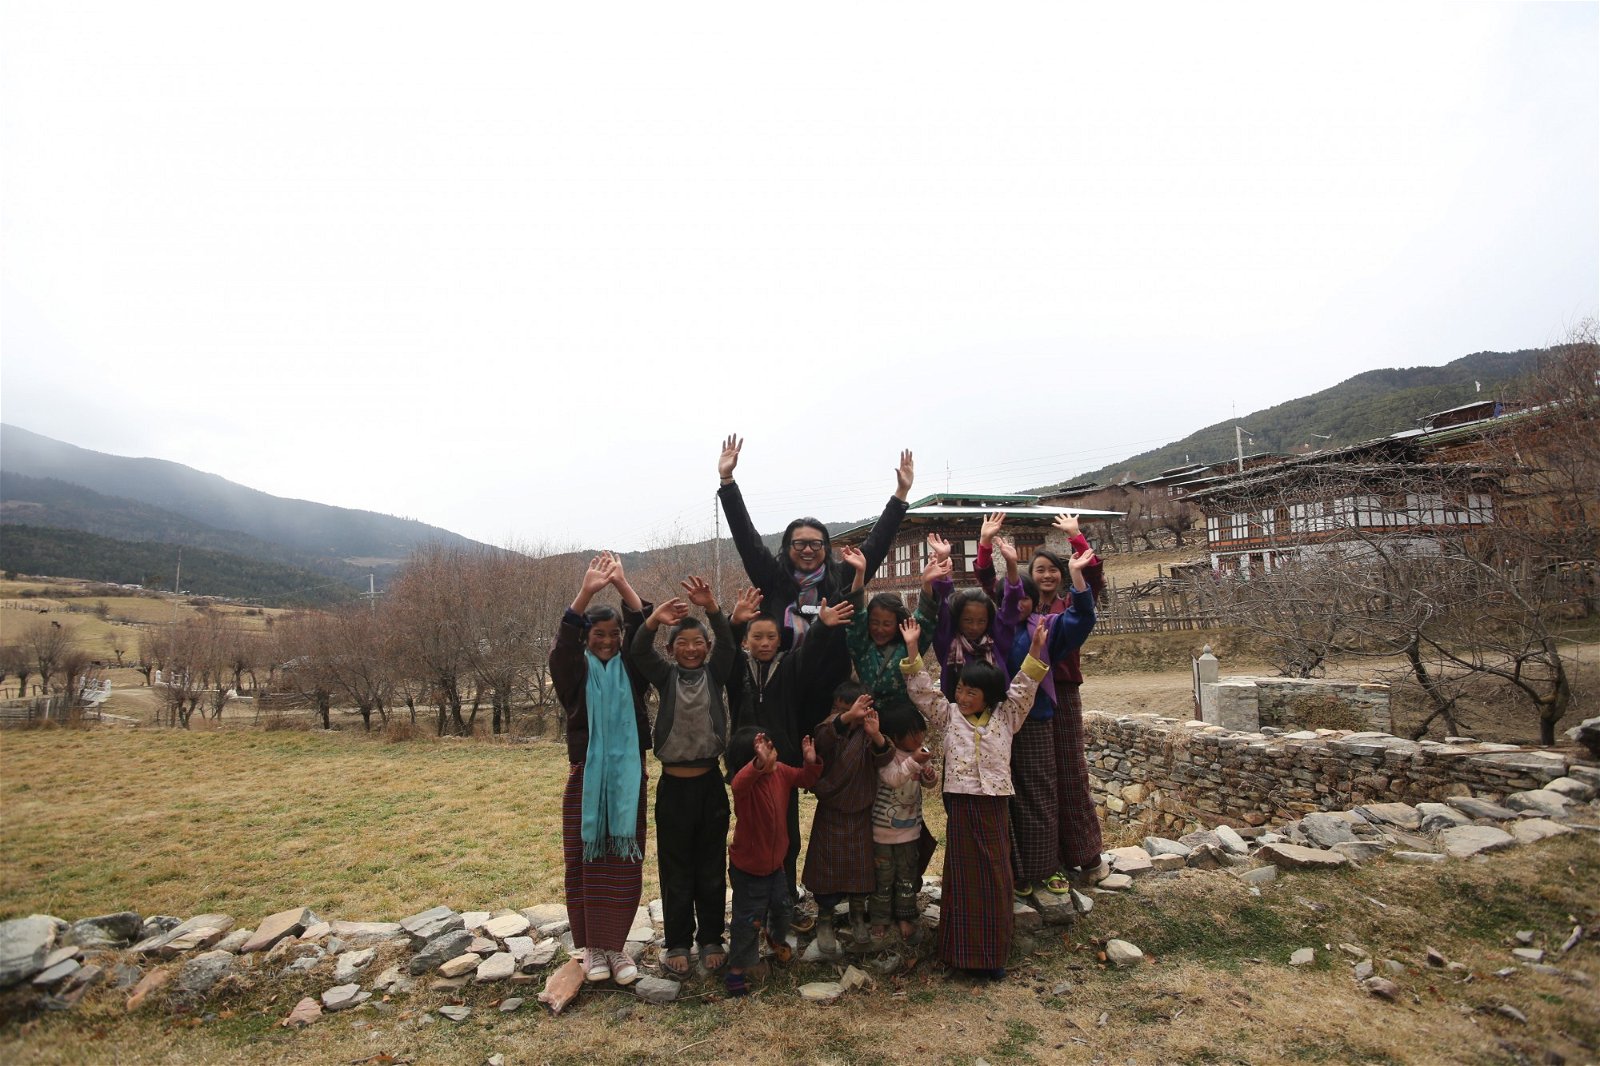 这些年，王睦宗除了周游列国拍摄之外，也抽出时间为当地青年义讲，至今已走过不丹、印度、波兰等地，启发孩子们发展出坚毅的意志。